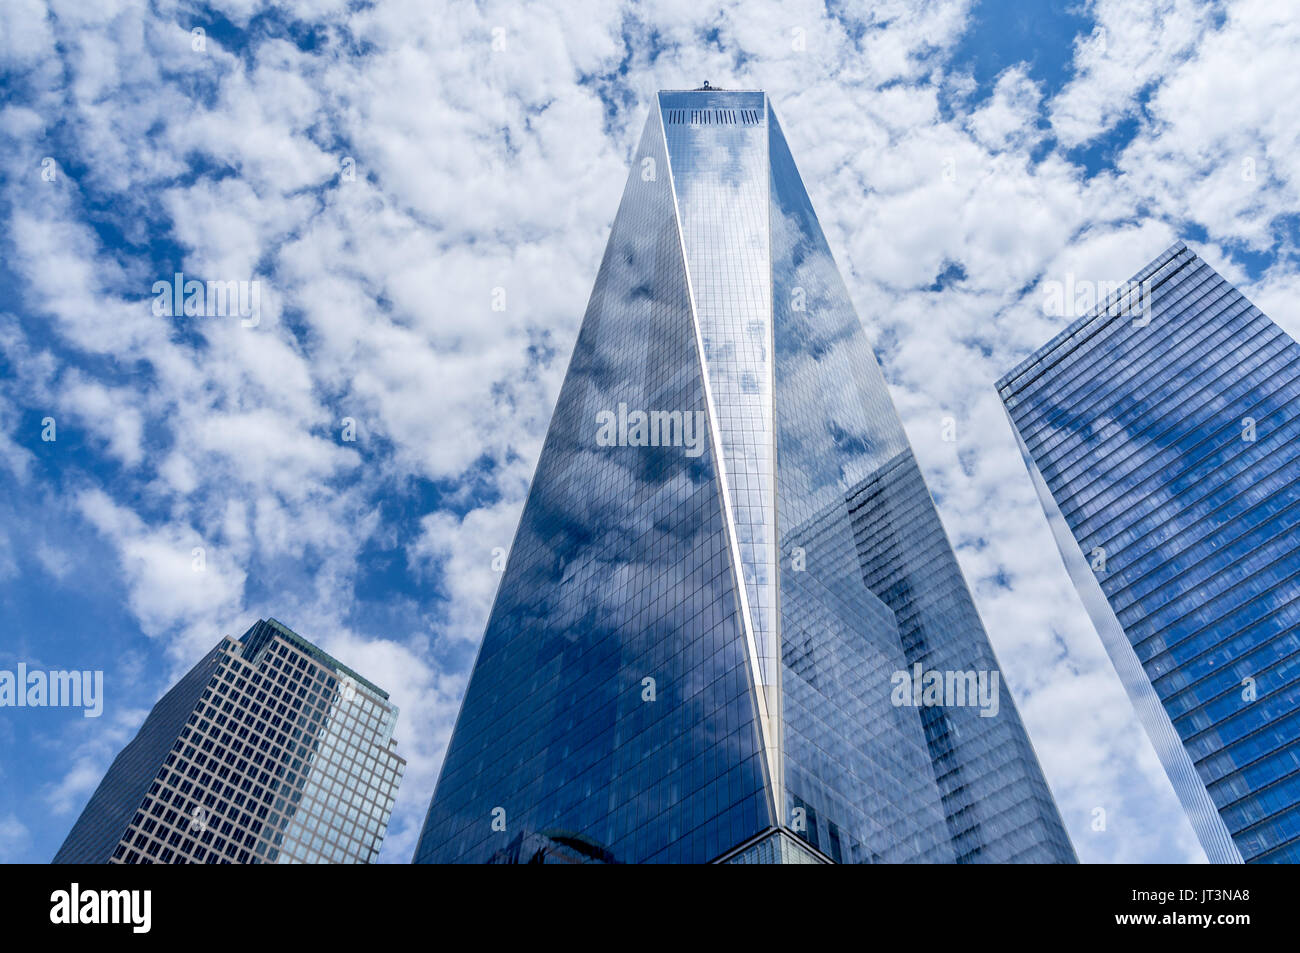 Stati Uniti d'America, New York, One World Trade Center (Freedom Tower). Situato a Manhattan, è l'edificio più alto negli Stati Uniti. Foto Stock